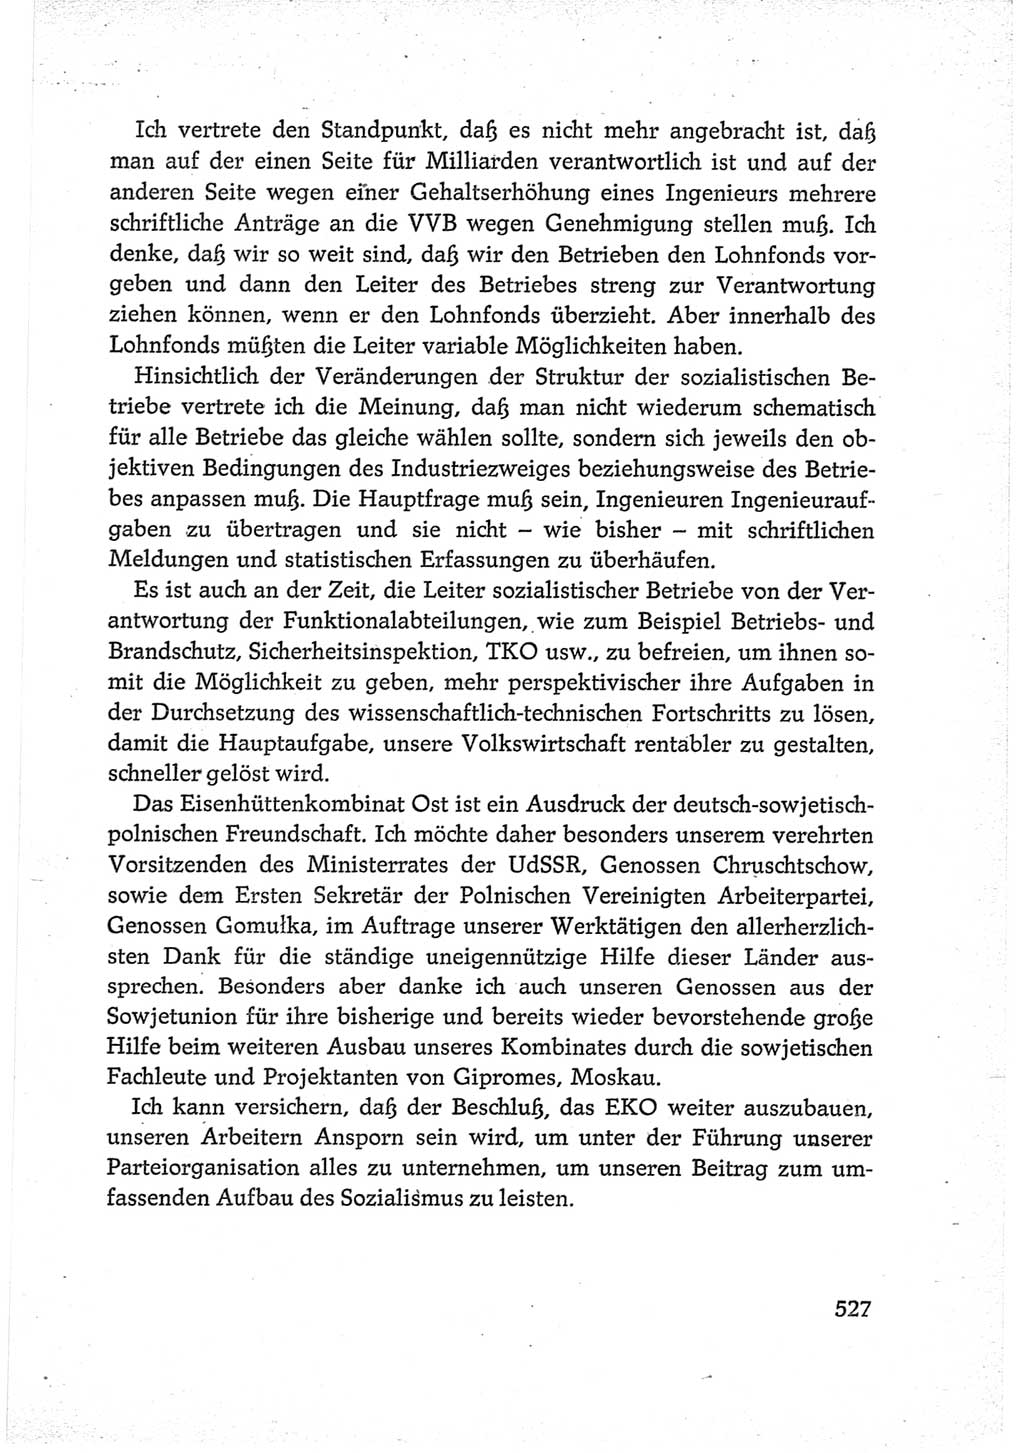 Protokoll der Verhandlungen des Ⅵ. Parteitages der Sozialistischen Einheitspartei Deutschlands (SED) [Deutsche Demokratische Republik (DDR)] 1963, Band Ⅲ, Seite 527 (Prot. Verh. Ⅵ. PT SED DDR 1963, Bd. Ⅲ, S. 527)